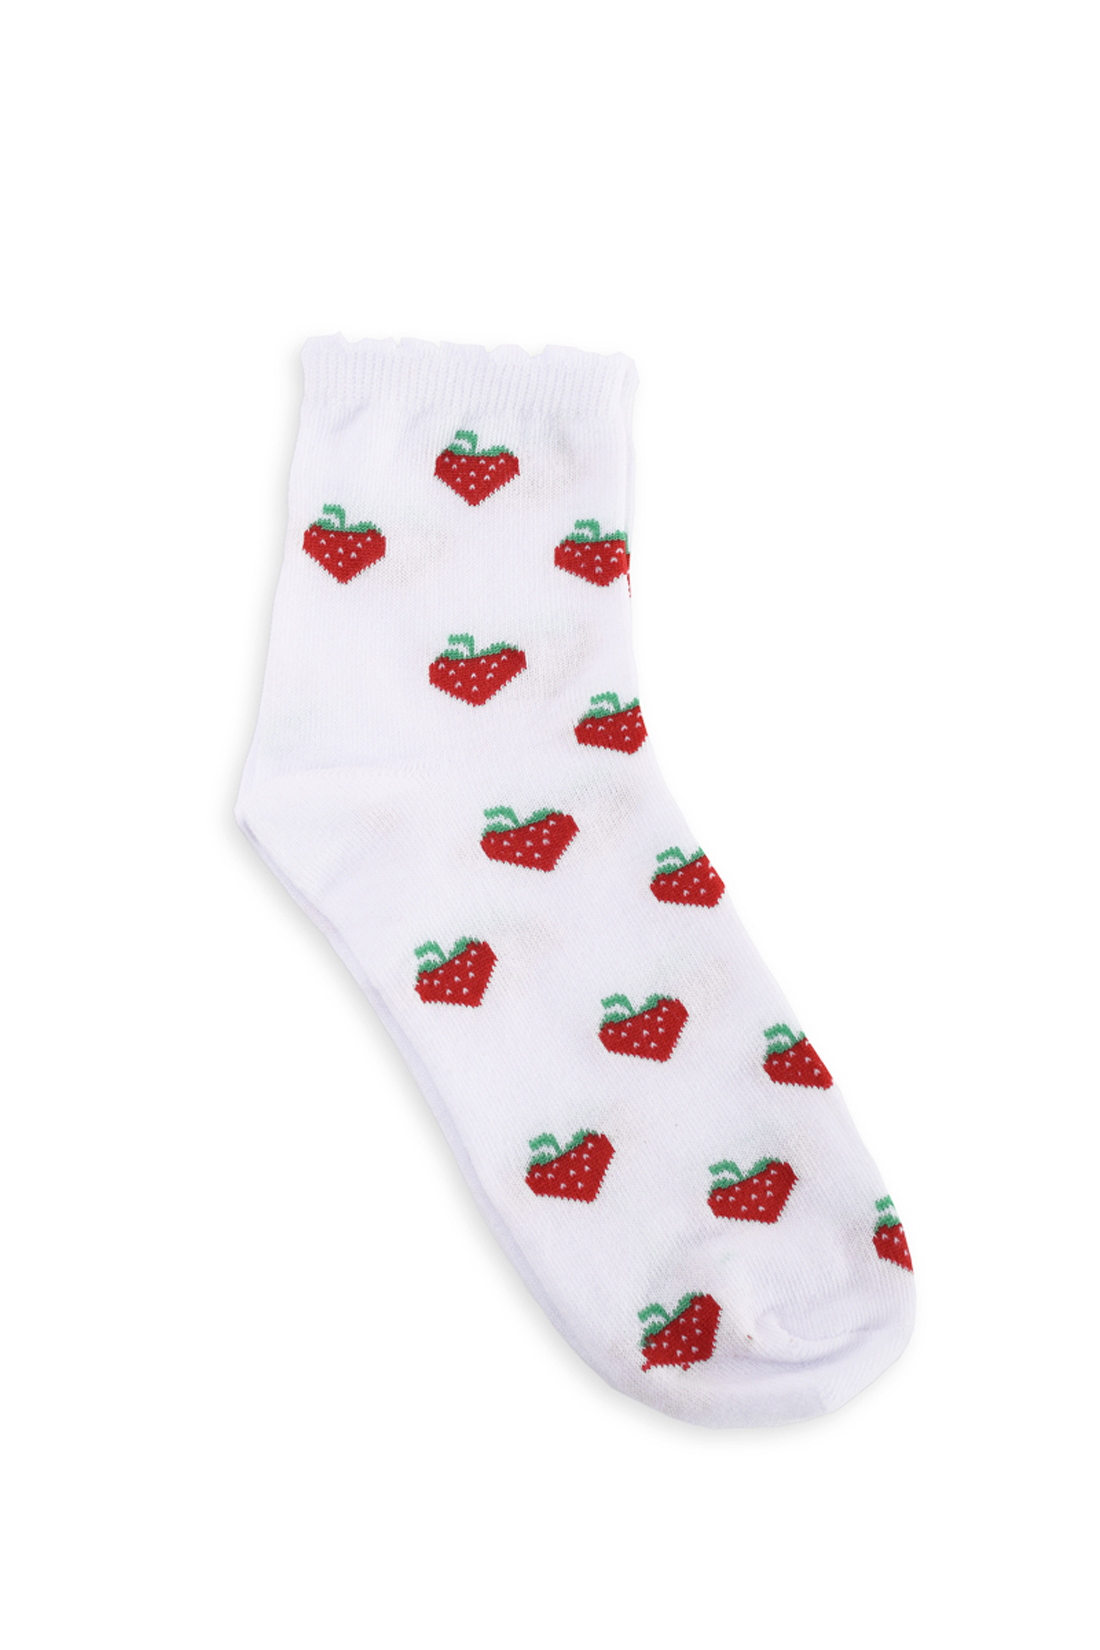 Носки с ягодами (арт. baon B399010), размер 35/37, цвет белый Носки с ягодами (арт. baon B399010) - фото 1